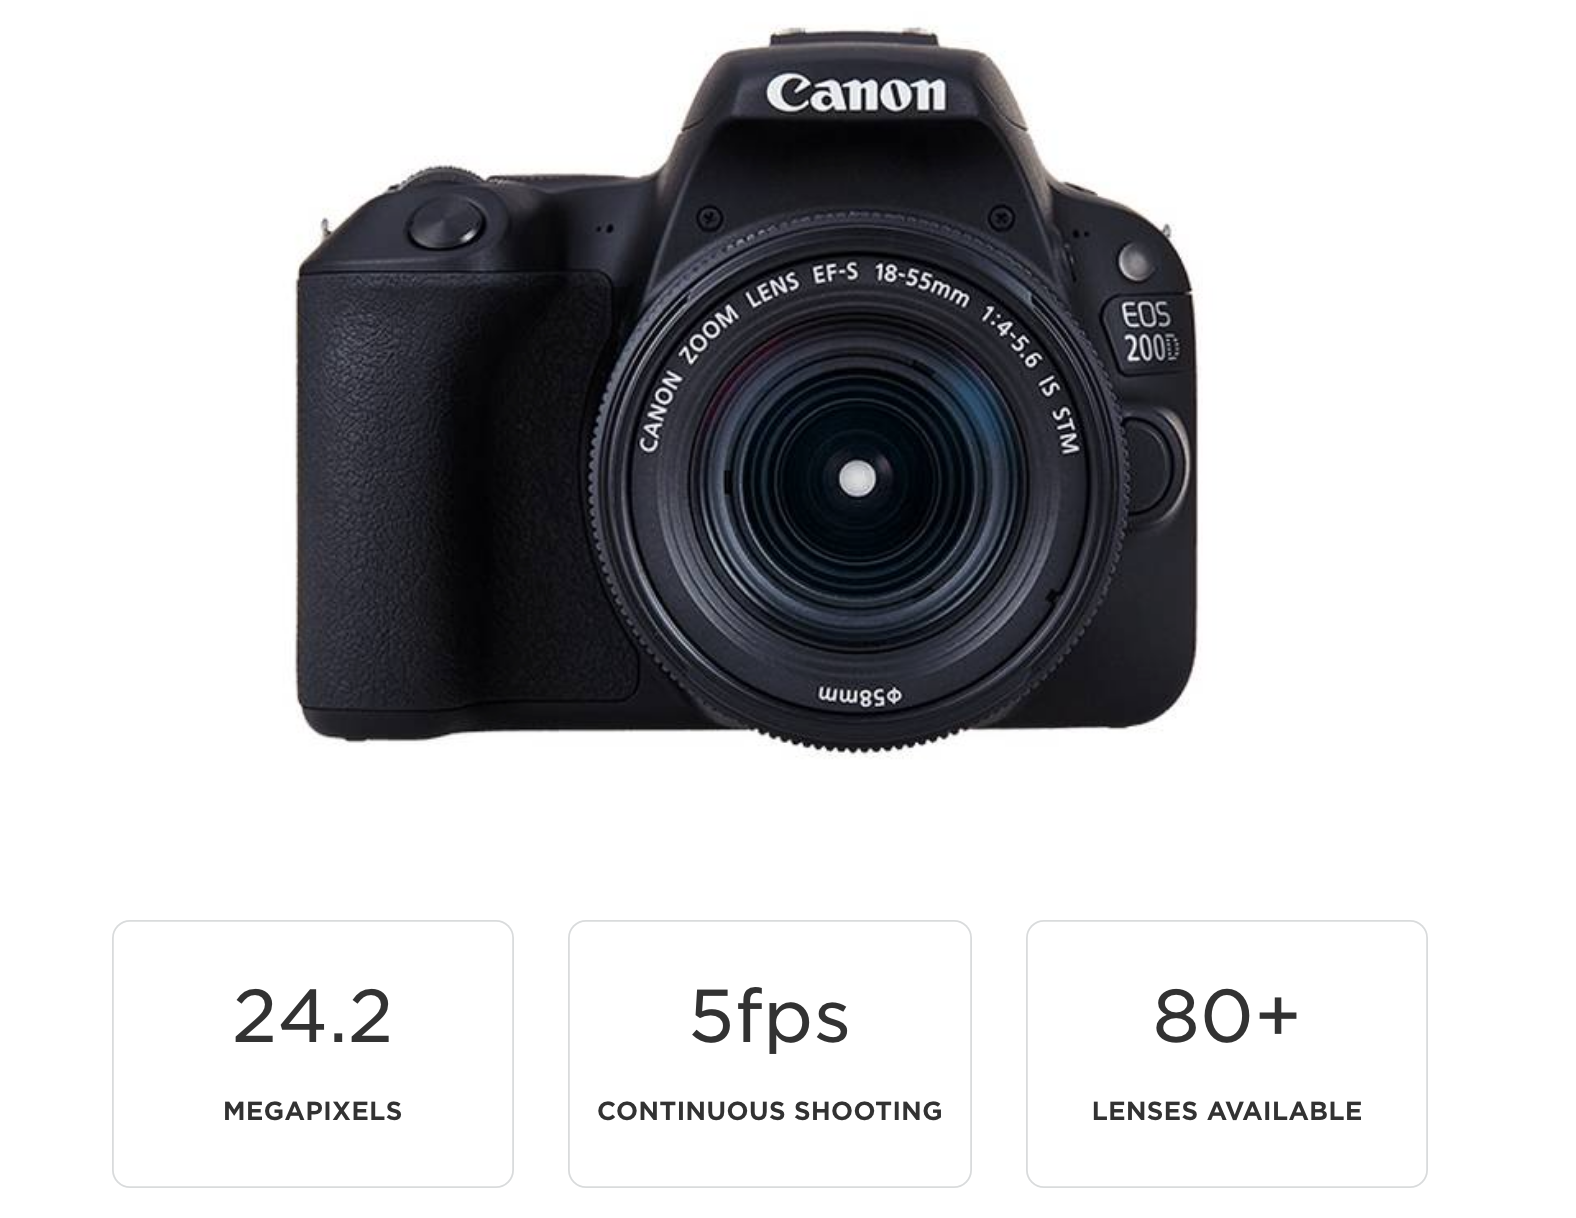 Canon 200D là một chiếc máy ảnh nhỏ gọn và dễ sử dụng. Nó được trang bị công nghệ tiên tiến giúp bạn chụp ảnh chất lượng cao và quay phim với độ nét cao. Chiếc máy ảnh này là lựa chọn tuyệt vời cho những ai mới bắt đầu sử dụng máy ảnh.